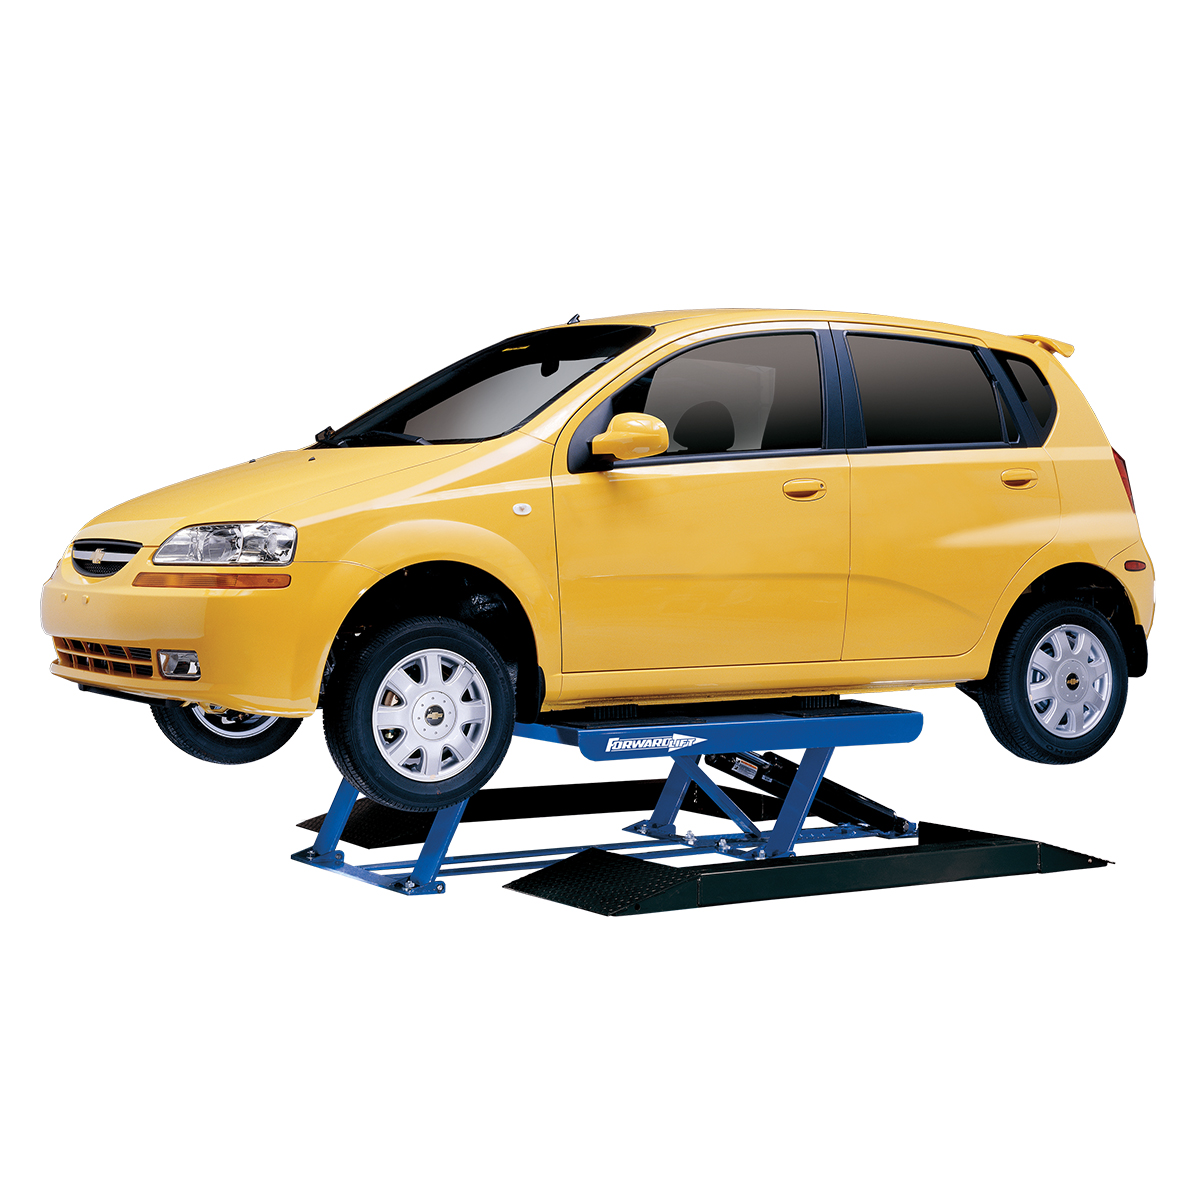 TL07 — 7000# Low Rise Tire/Brake Service Lift, 115V.